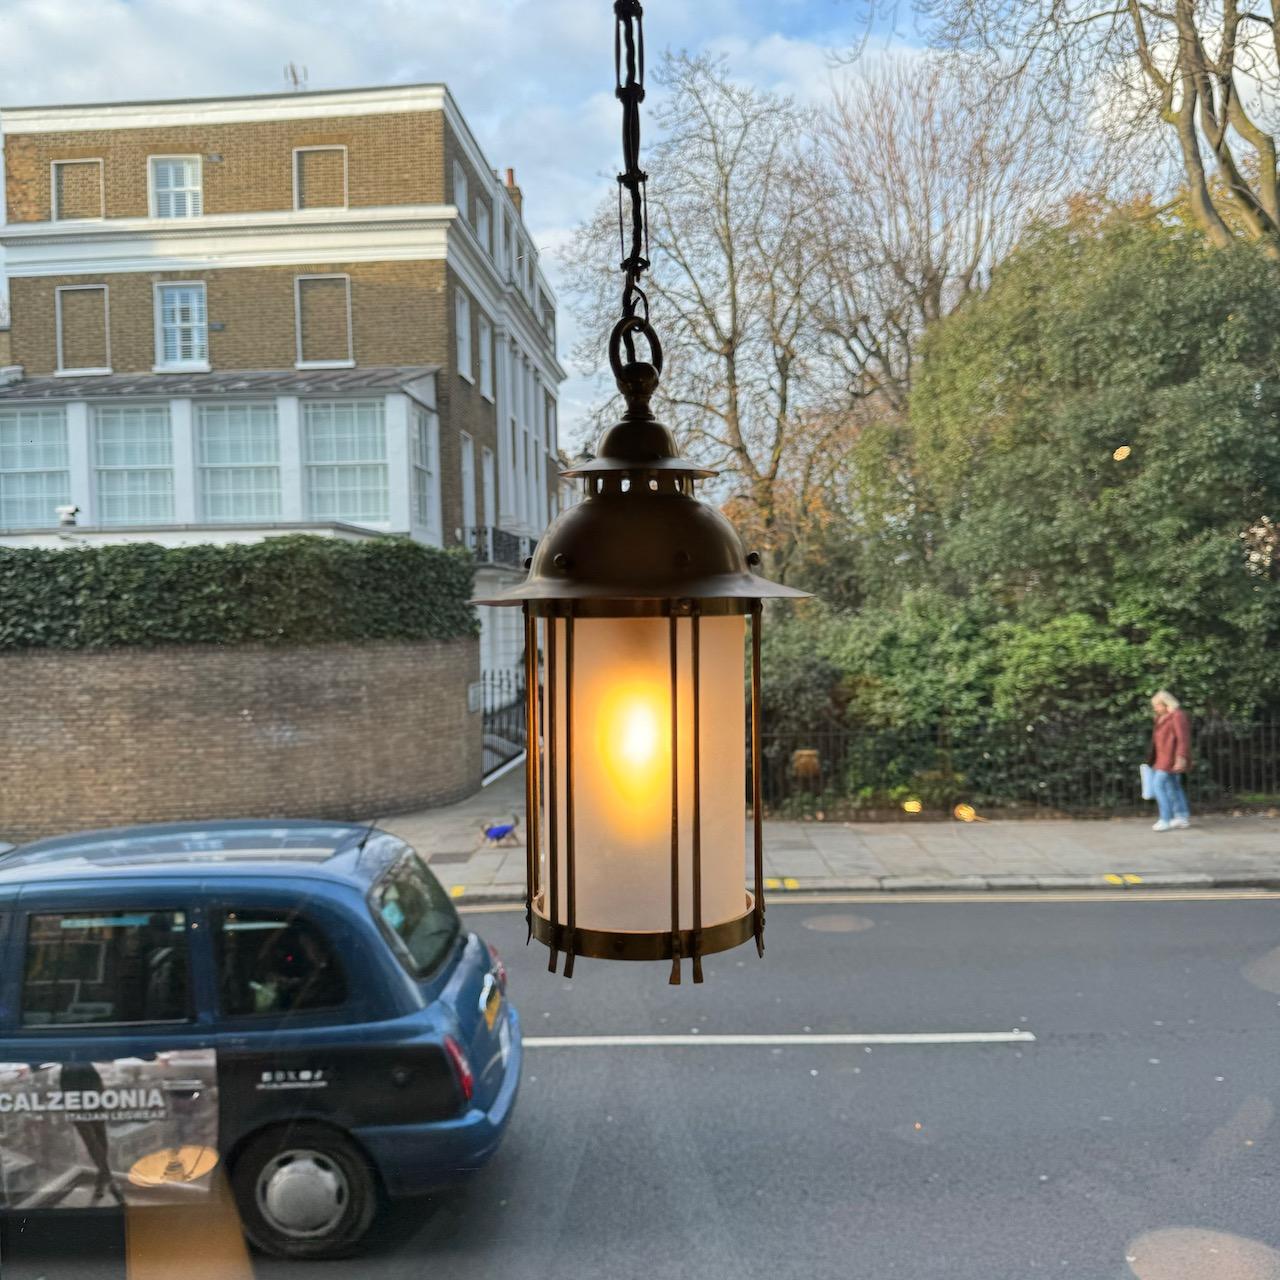 Cette lanterne en laiton a été fabriquée en Grande-Bretagne entre 1908 et 1909. 

La lanterne est suspendue par une chaîne de maillons rectangulaires en laiton, faisant écho à la linéarité du design global. Le col de la lanterne est articulé par des